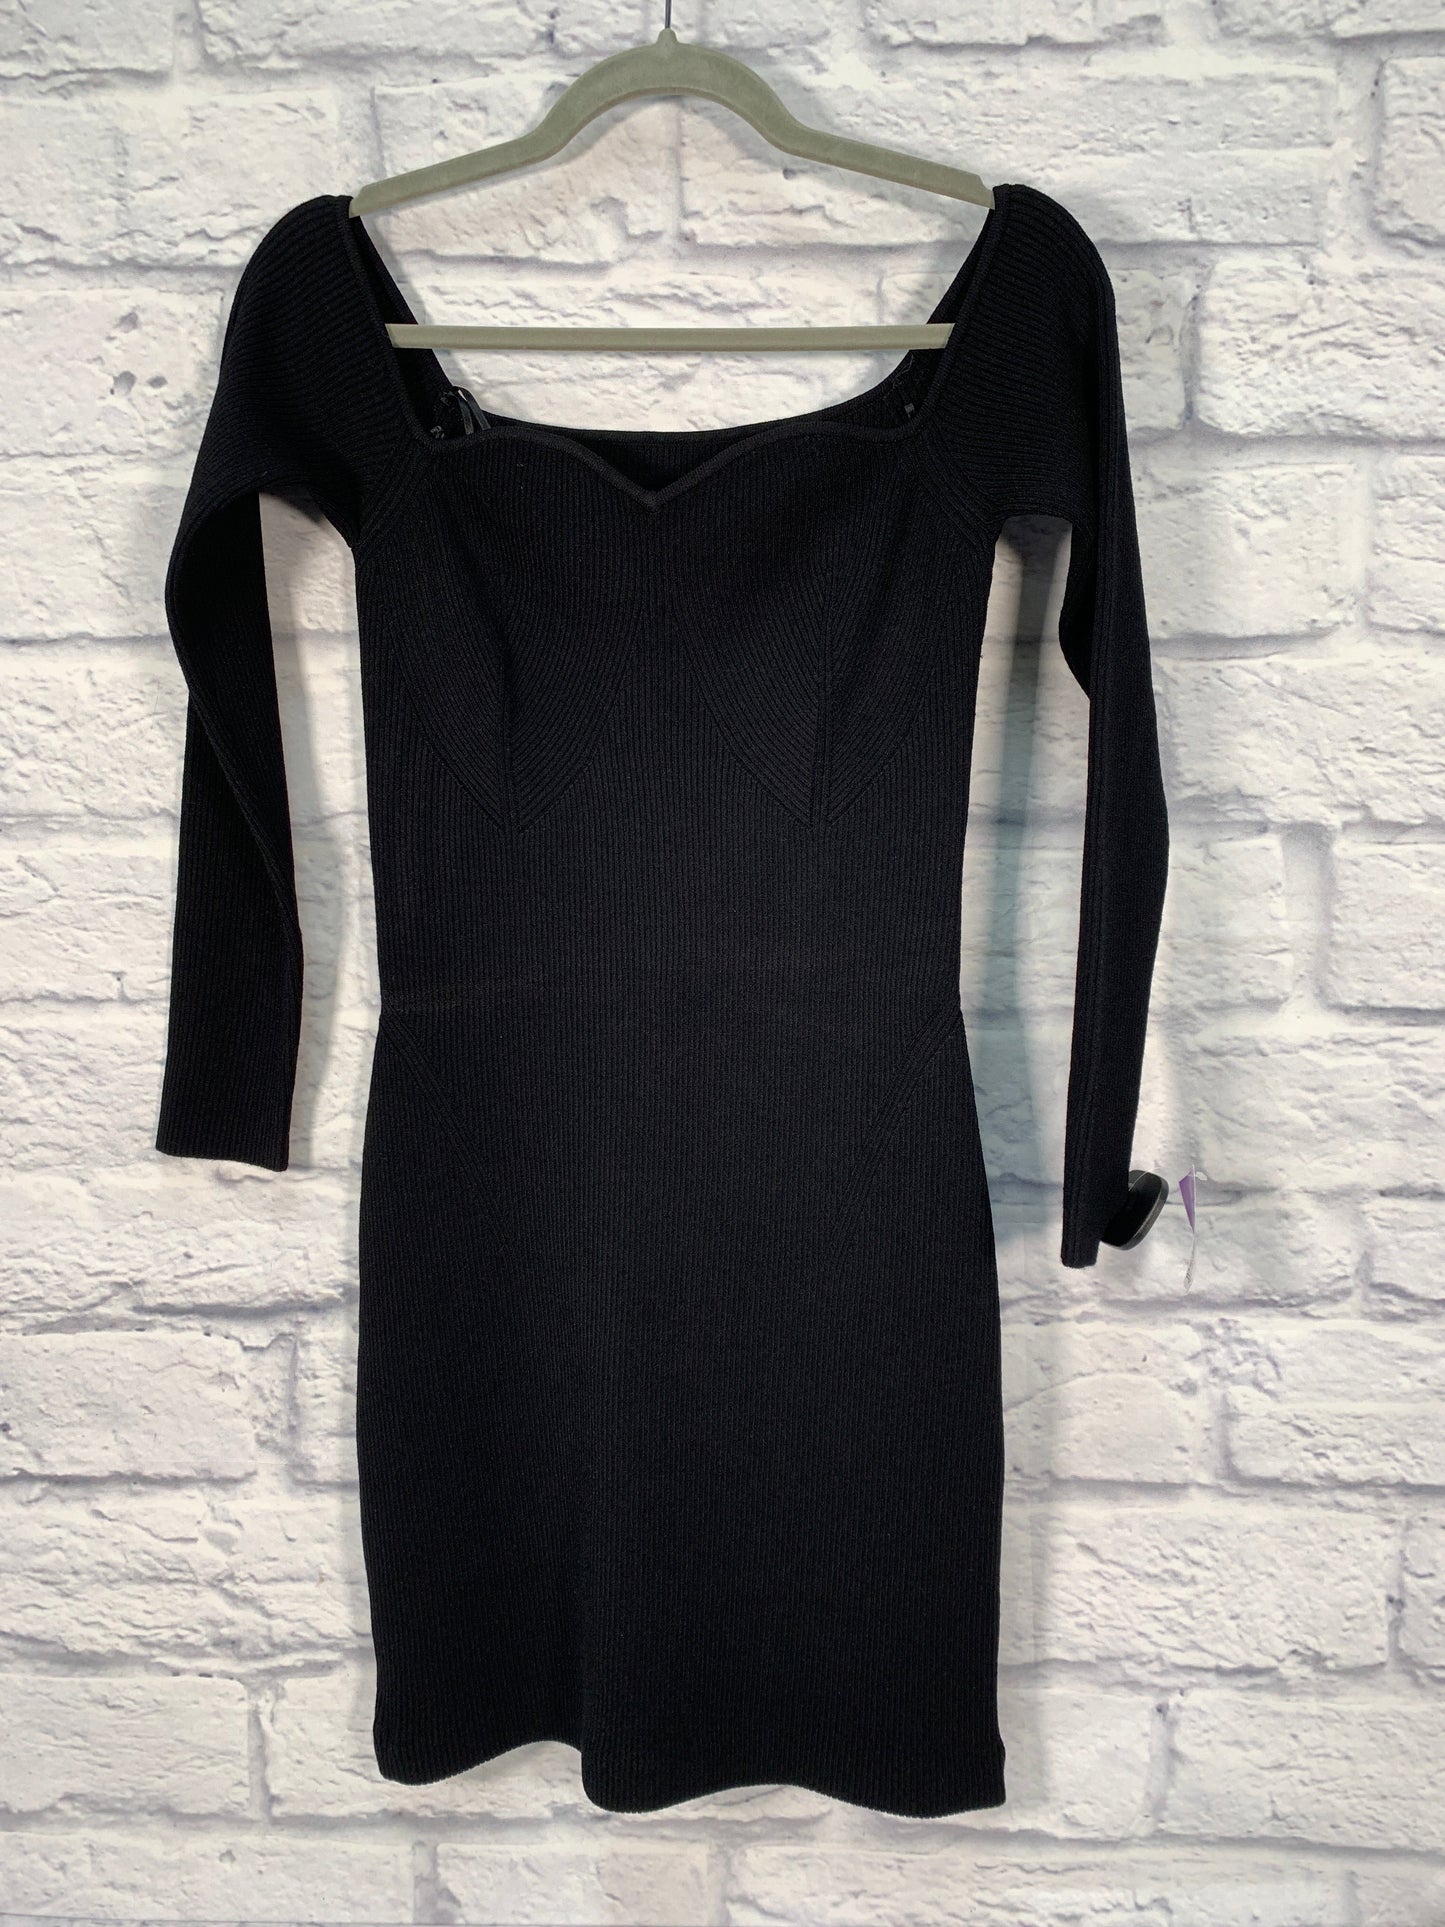 Black Dress Designer Milly, Size L